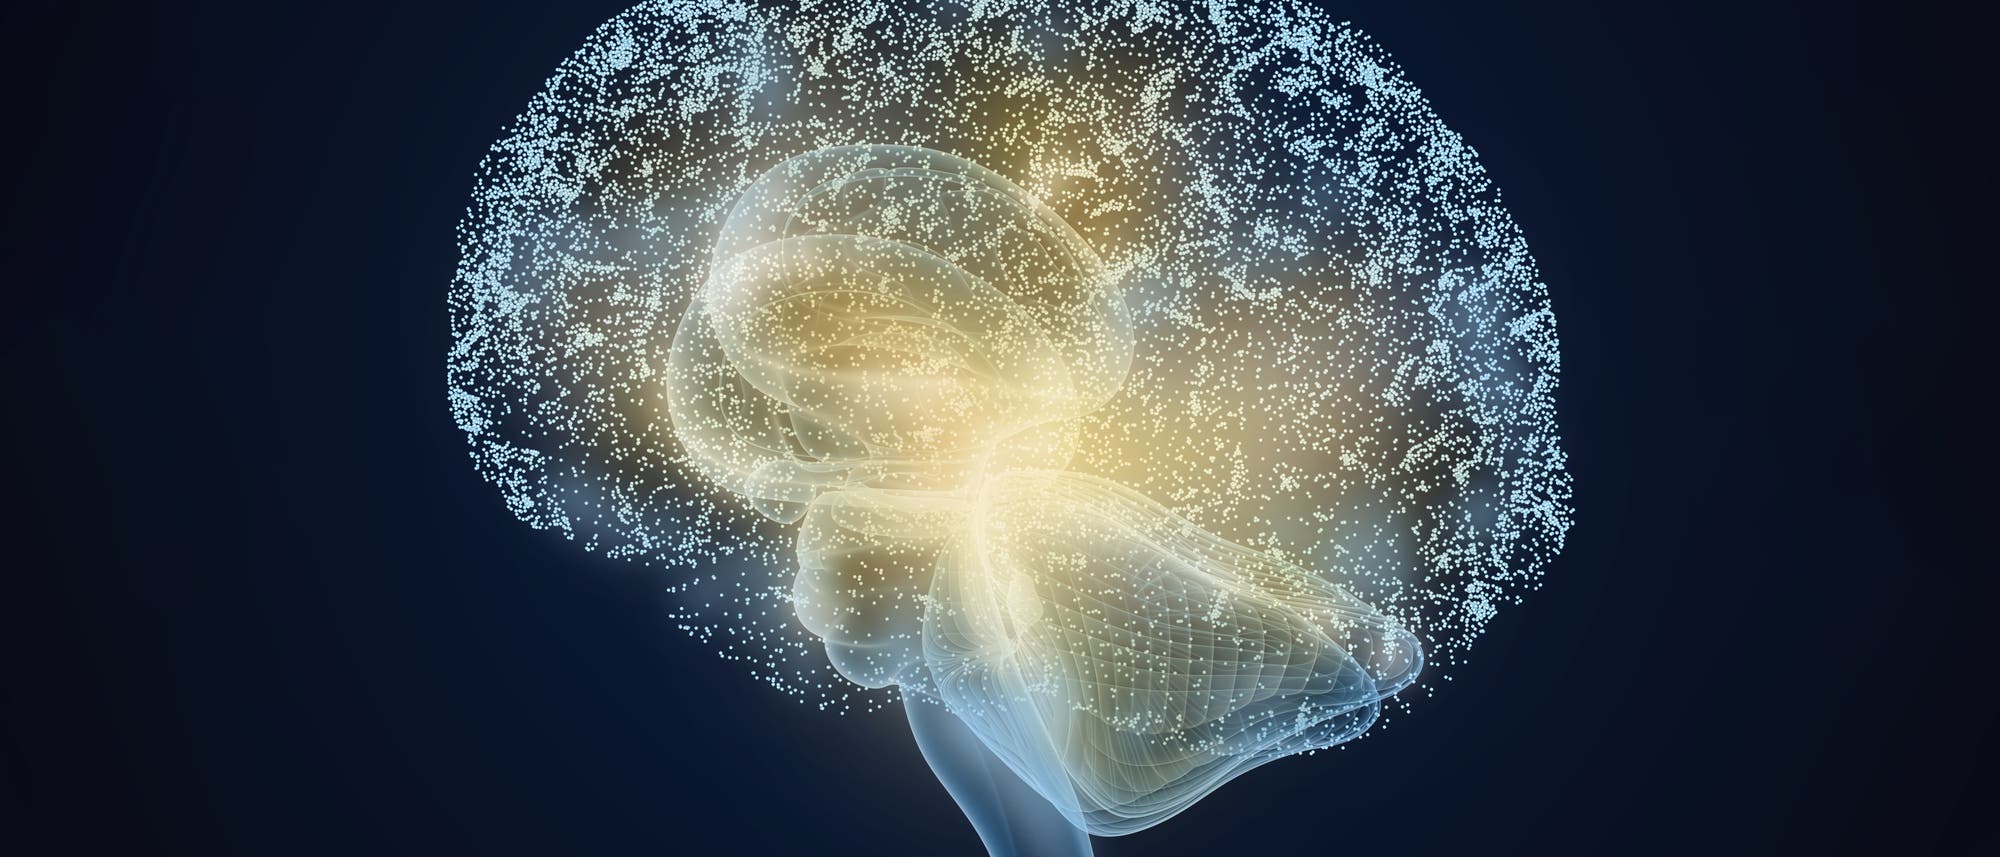 Menschliches Gehirn-Modell mit Thalamus